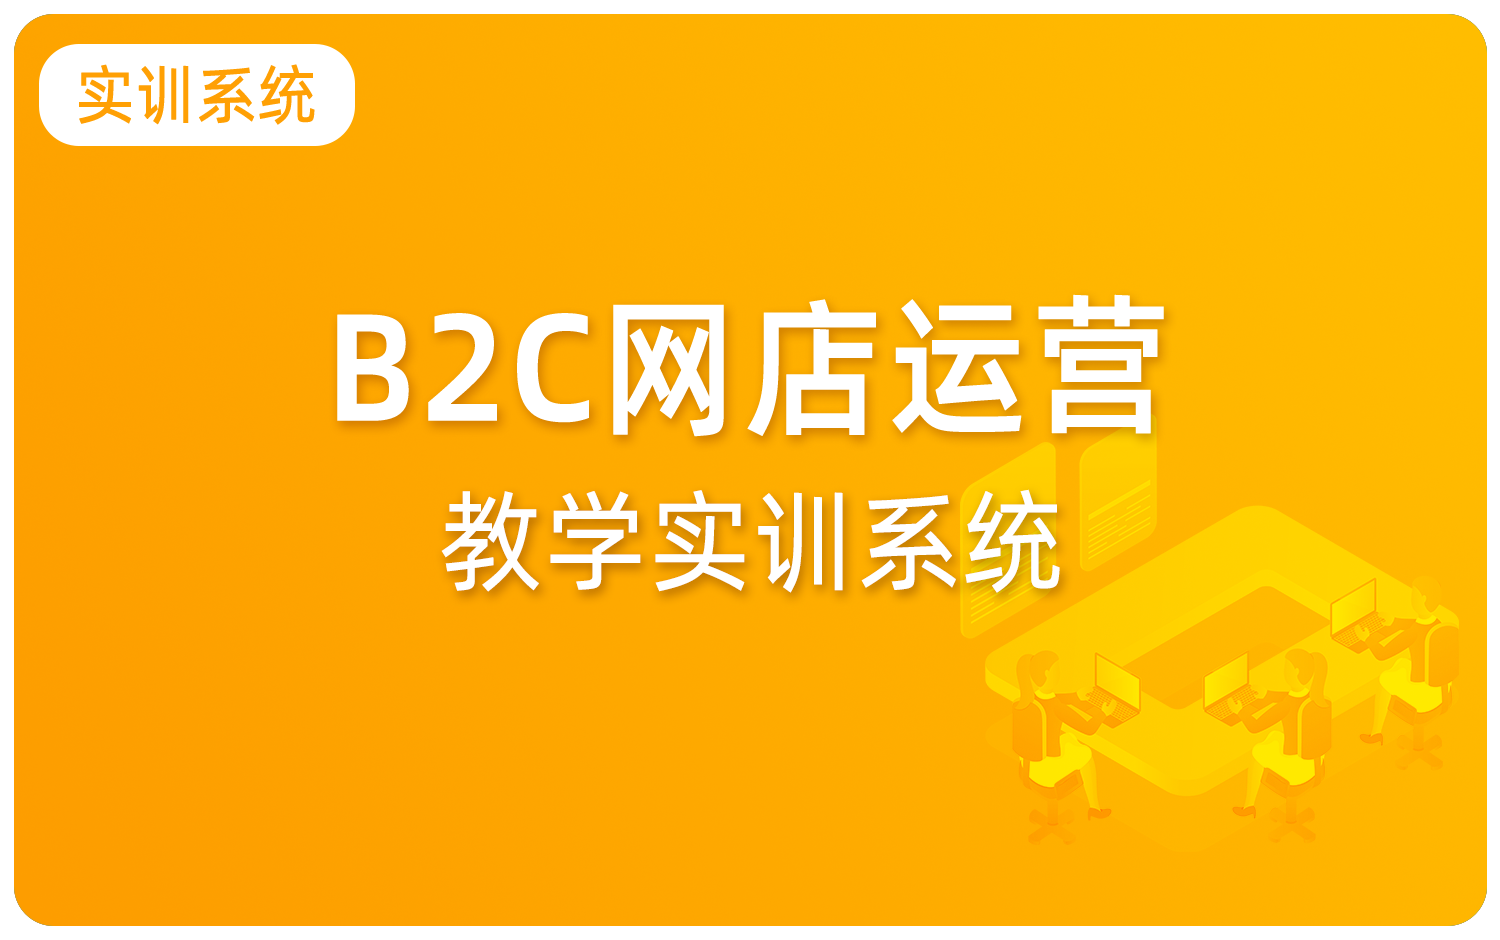 B2C网店运营教学实训系统